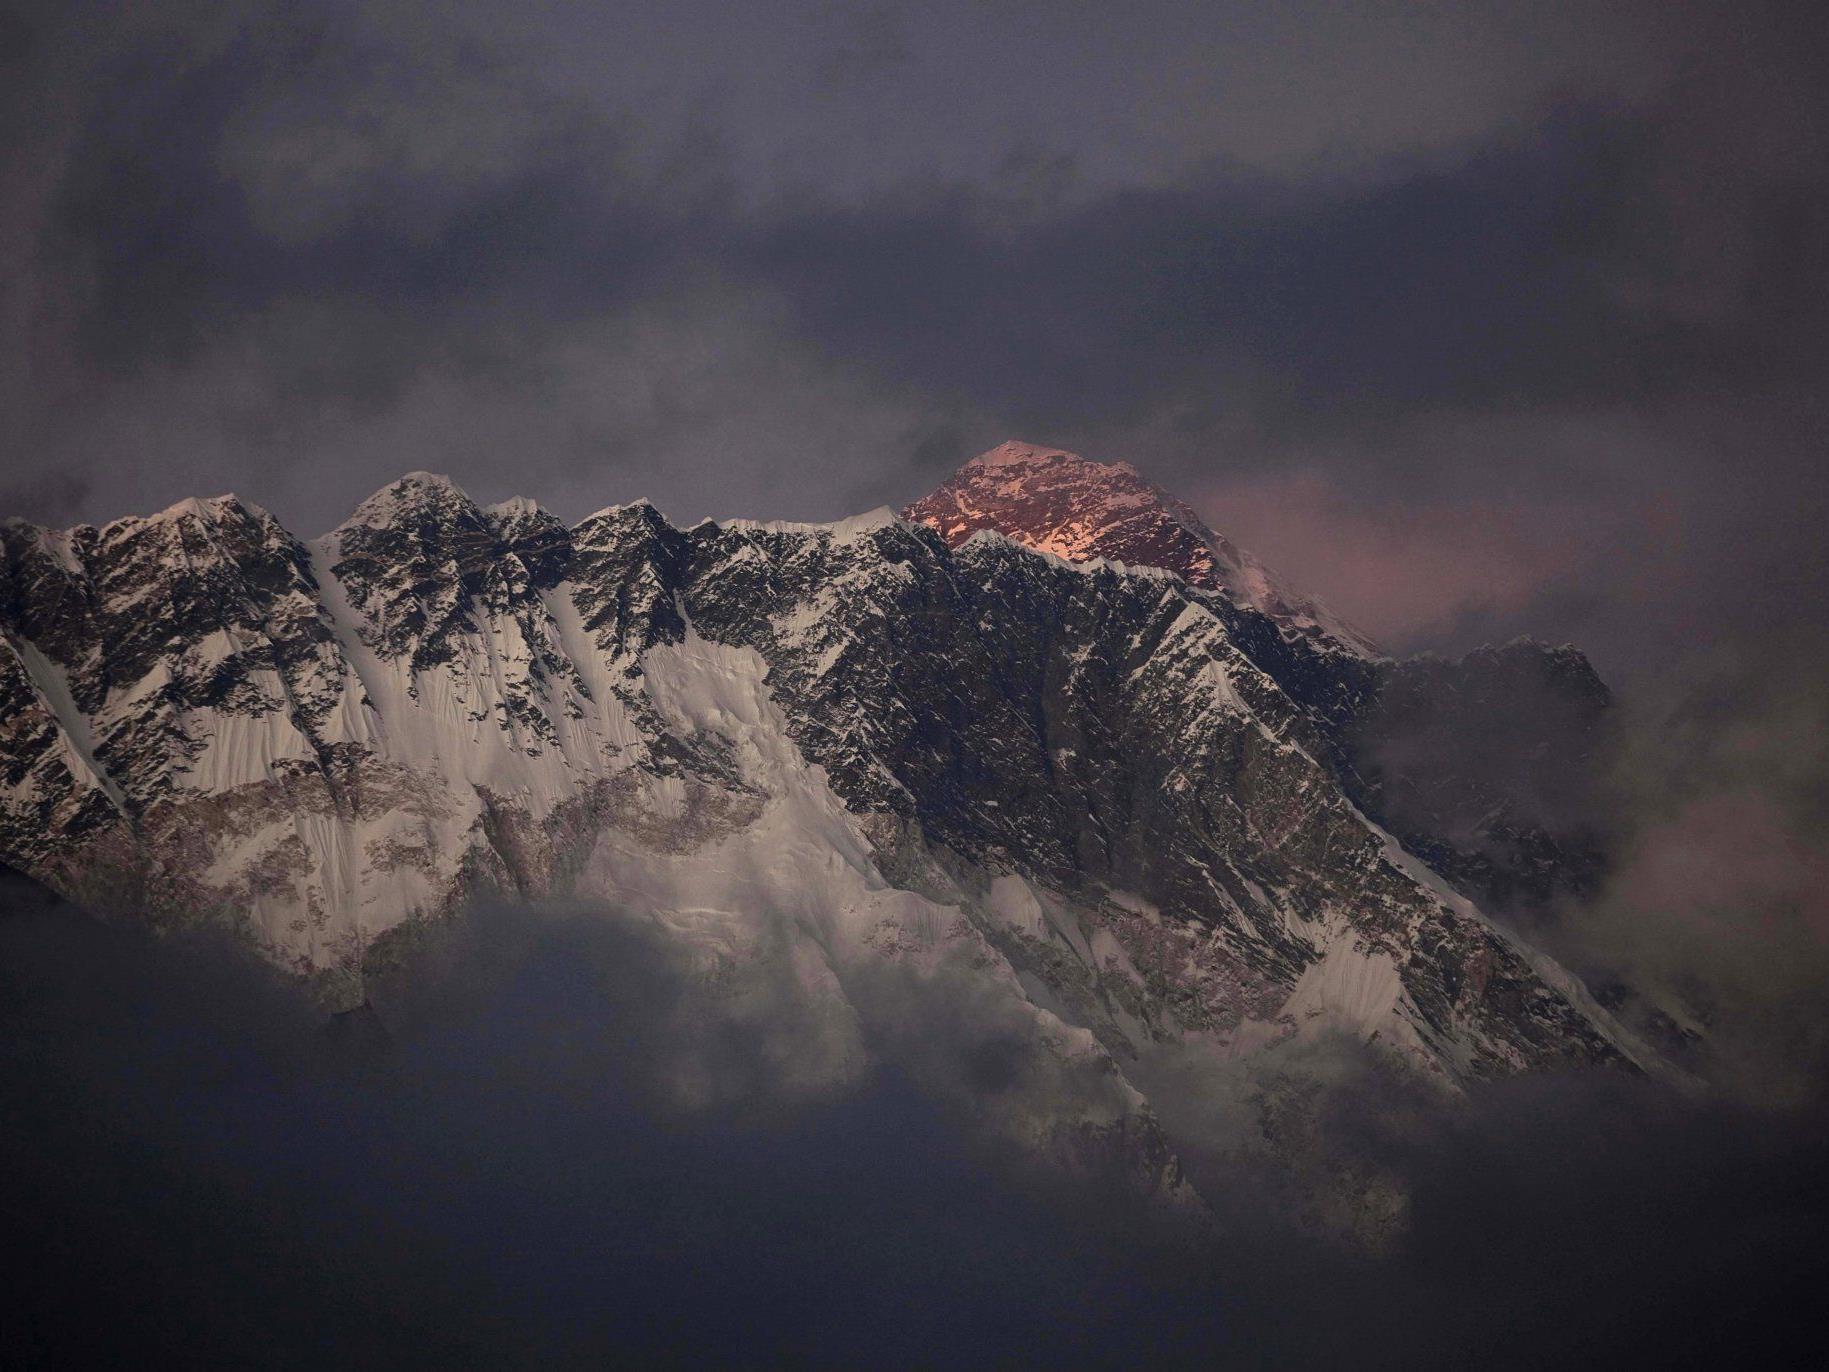 Sonnenaufgang auf dem Mount Everest